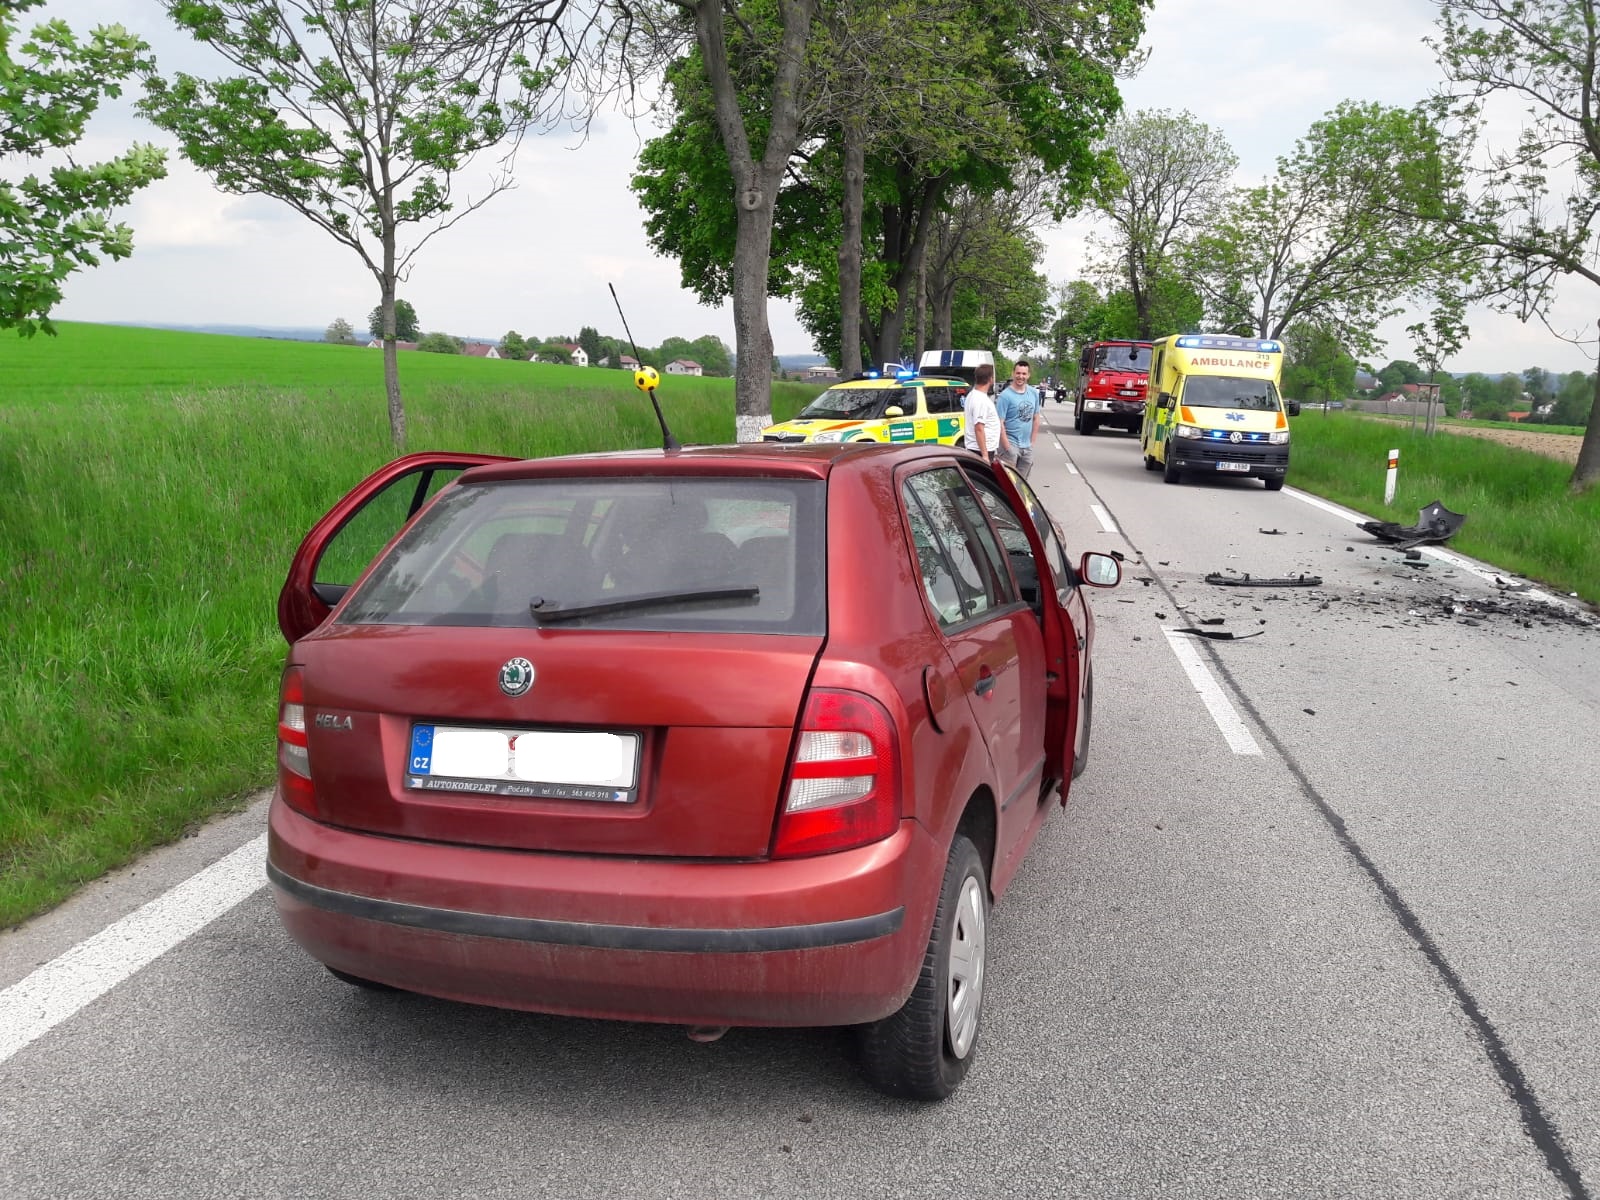 Dopravní nehoda 2 OA, Kardašova Řečice - 26. 5. 2019 (3).jpg